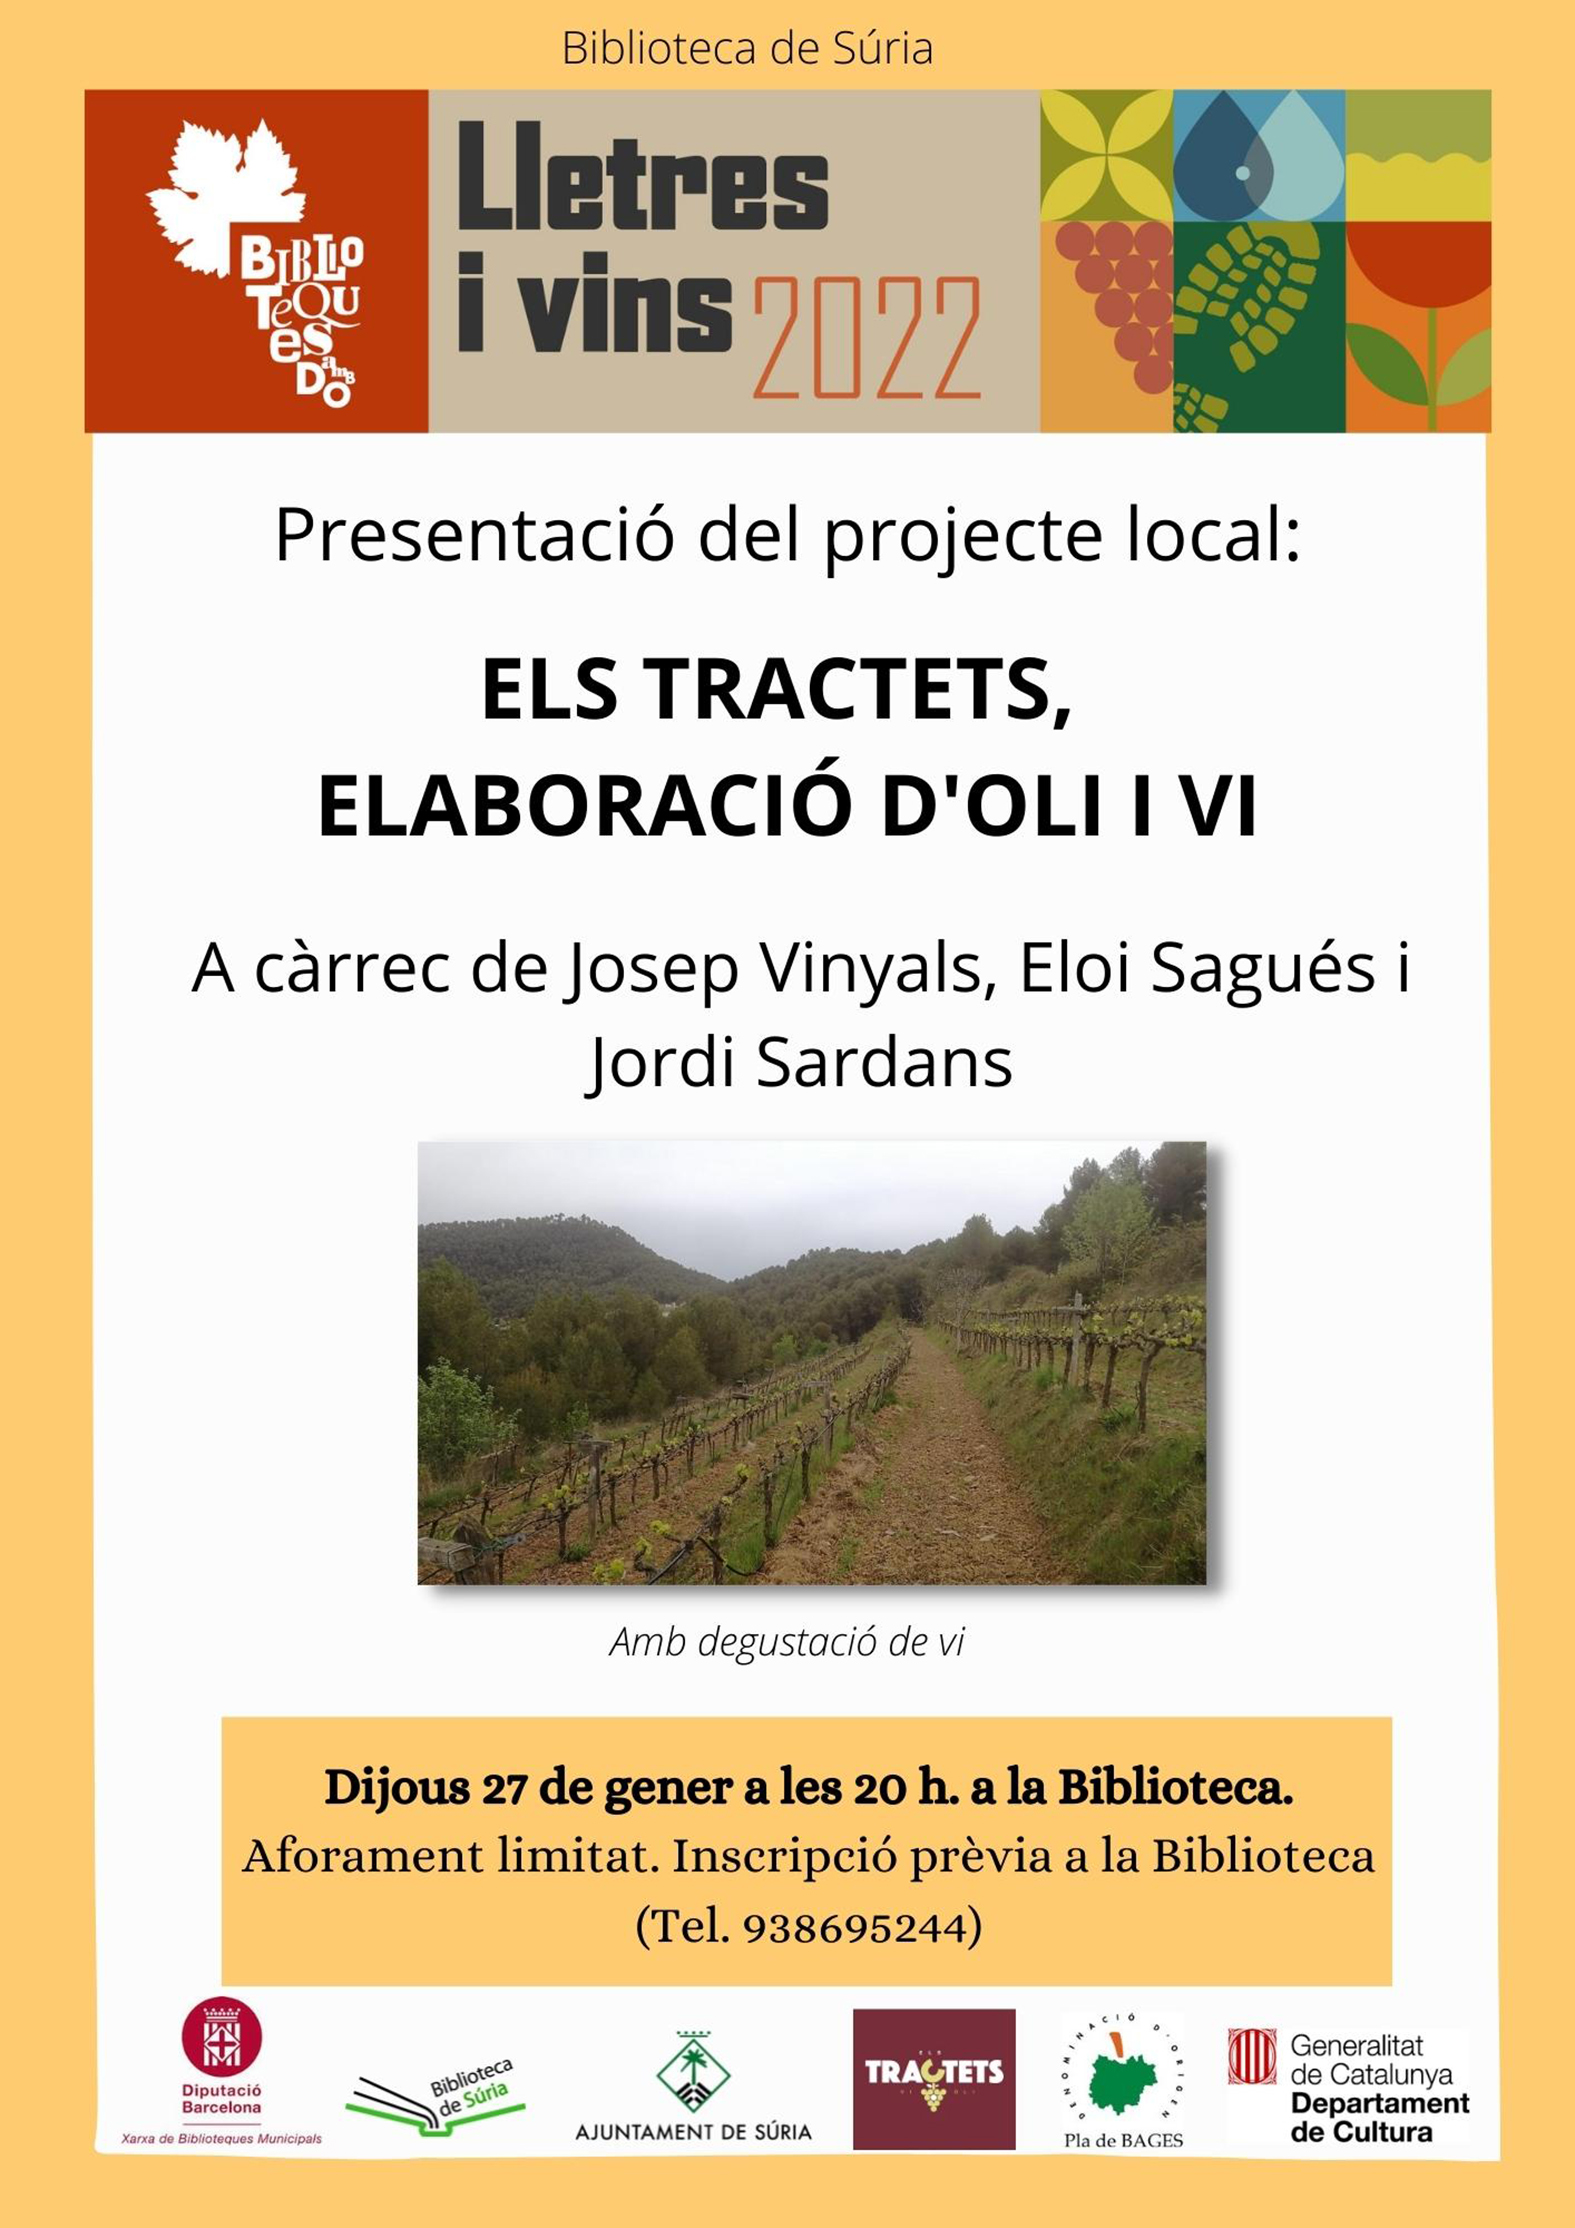 Presentació del projecte local 'Els Tractets, elaboració d'oli i vi'